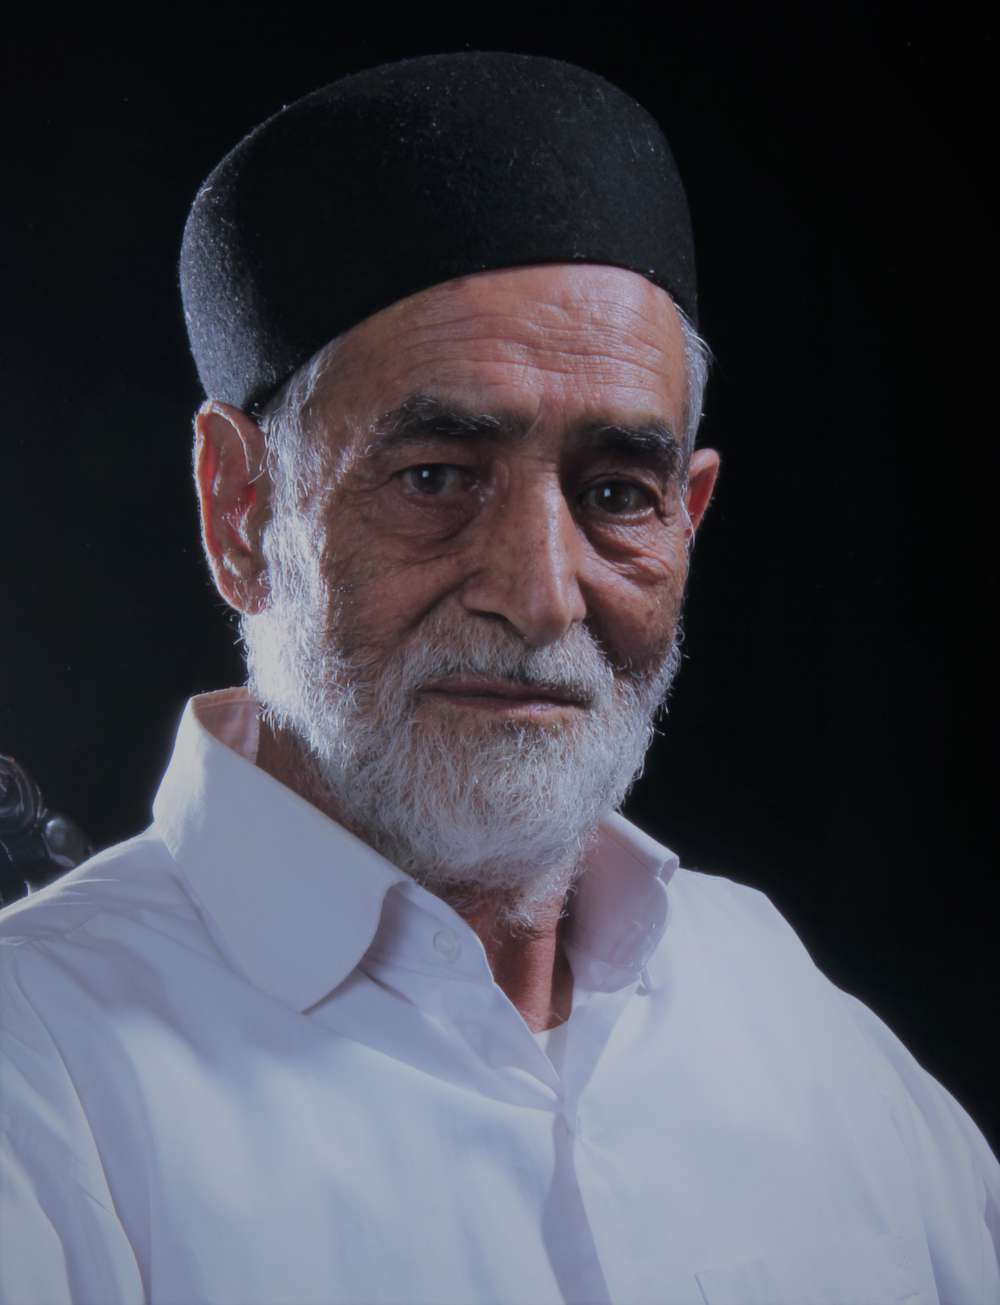 اولین سالگرد شادروان اسداله  خان بهرامی پدر شهید حجت بهرامی